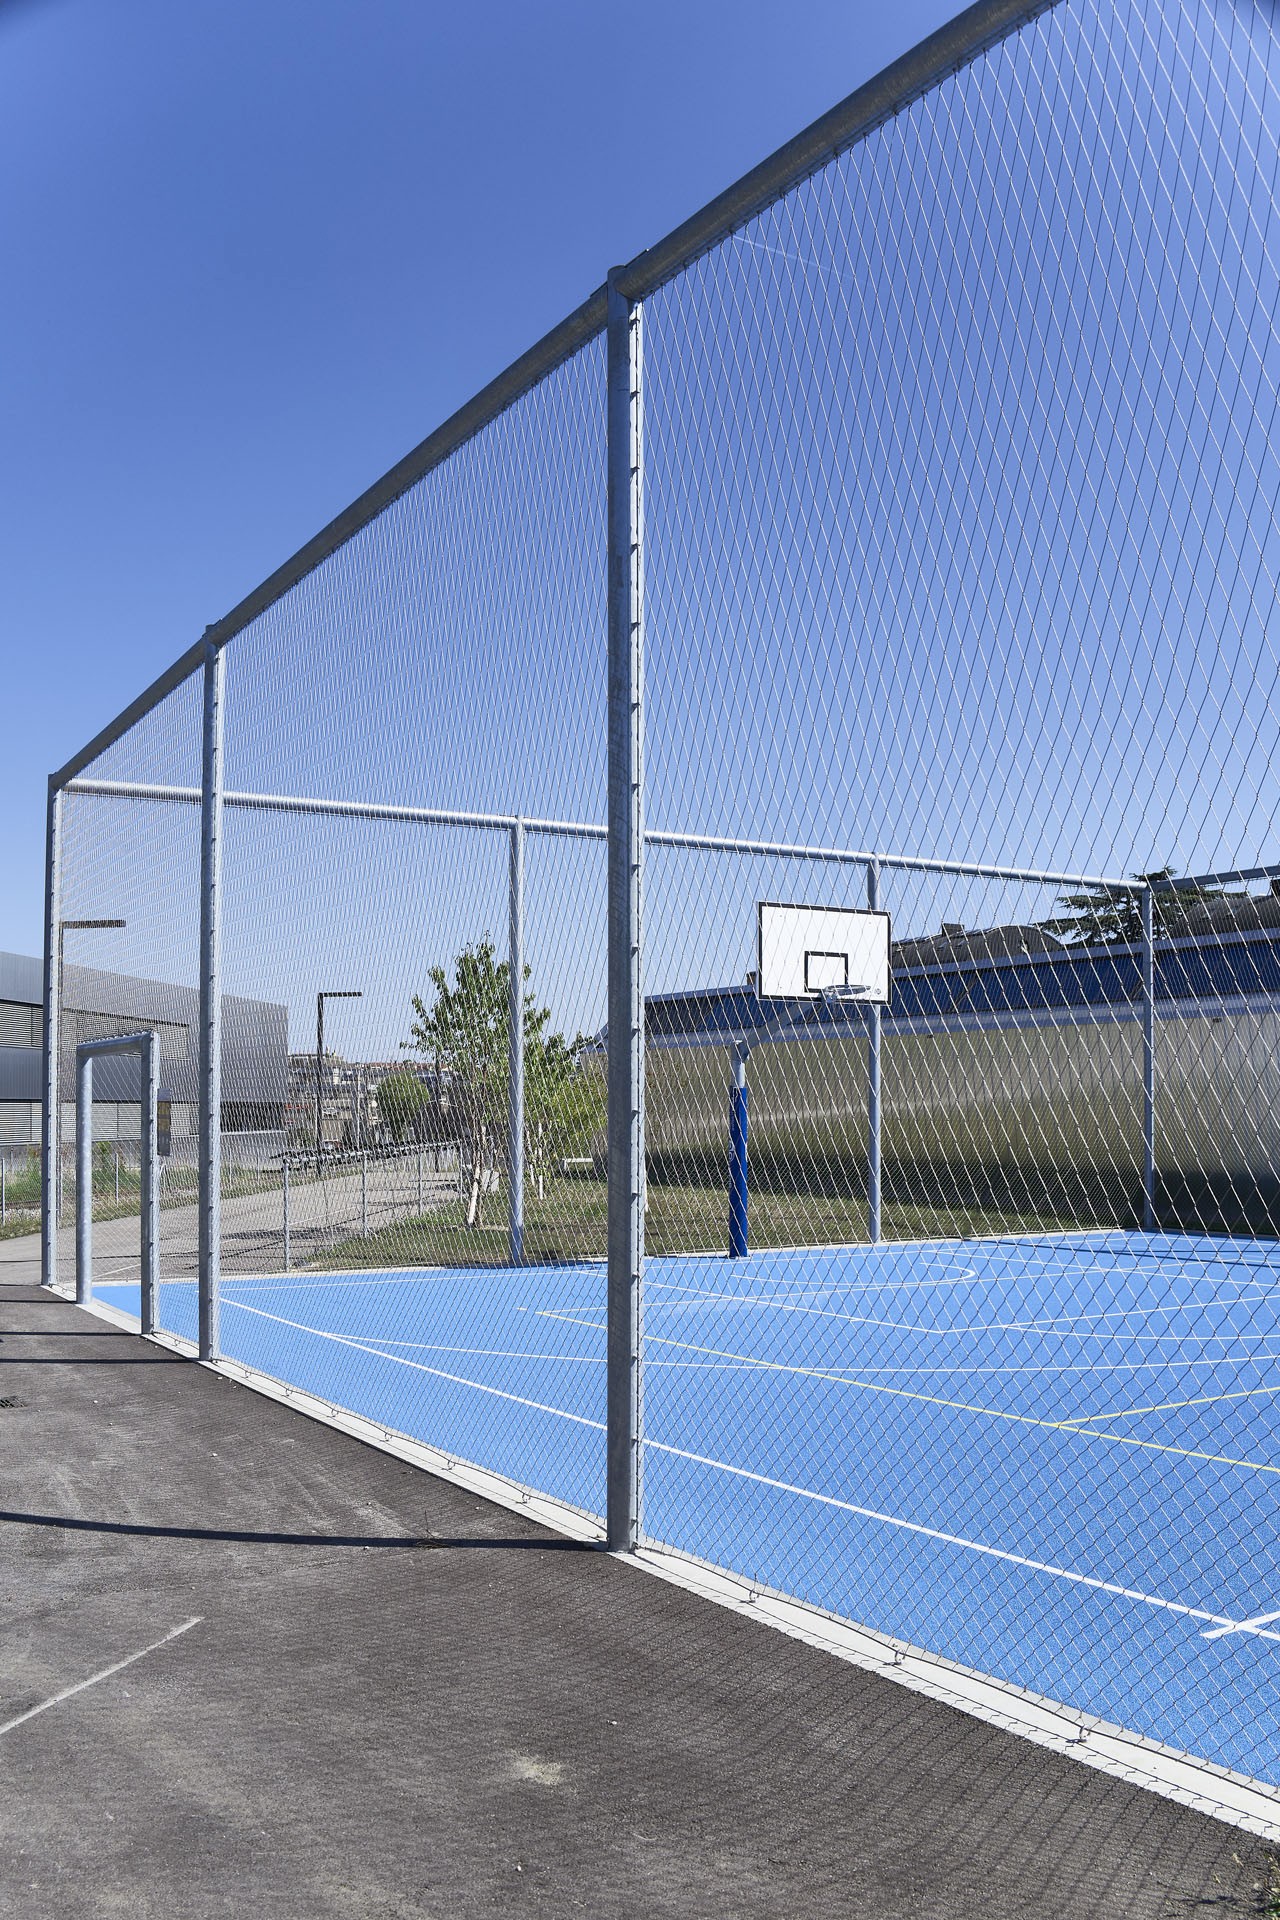 Grillage métallique sur un terrain de basket-ball